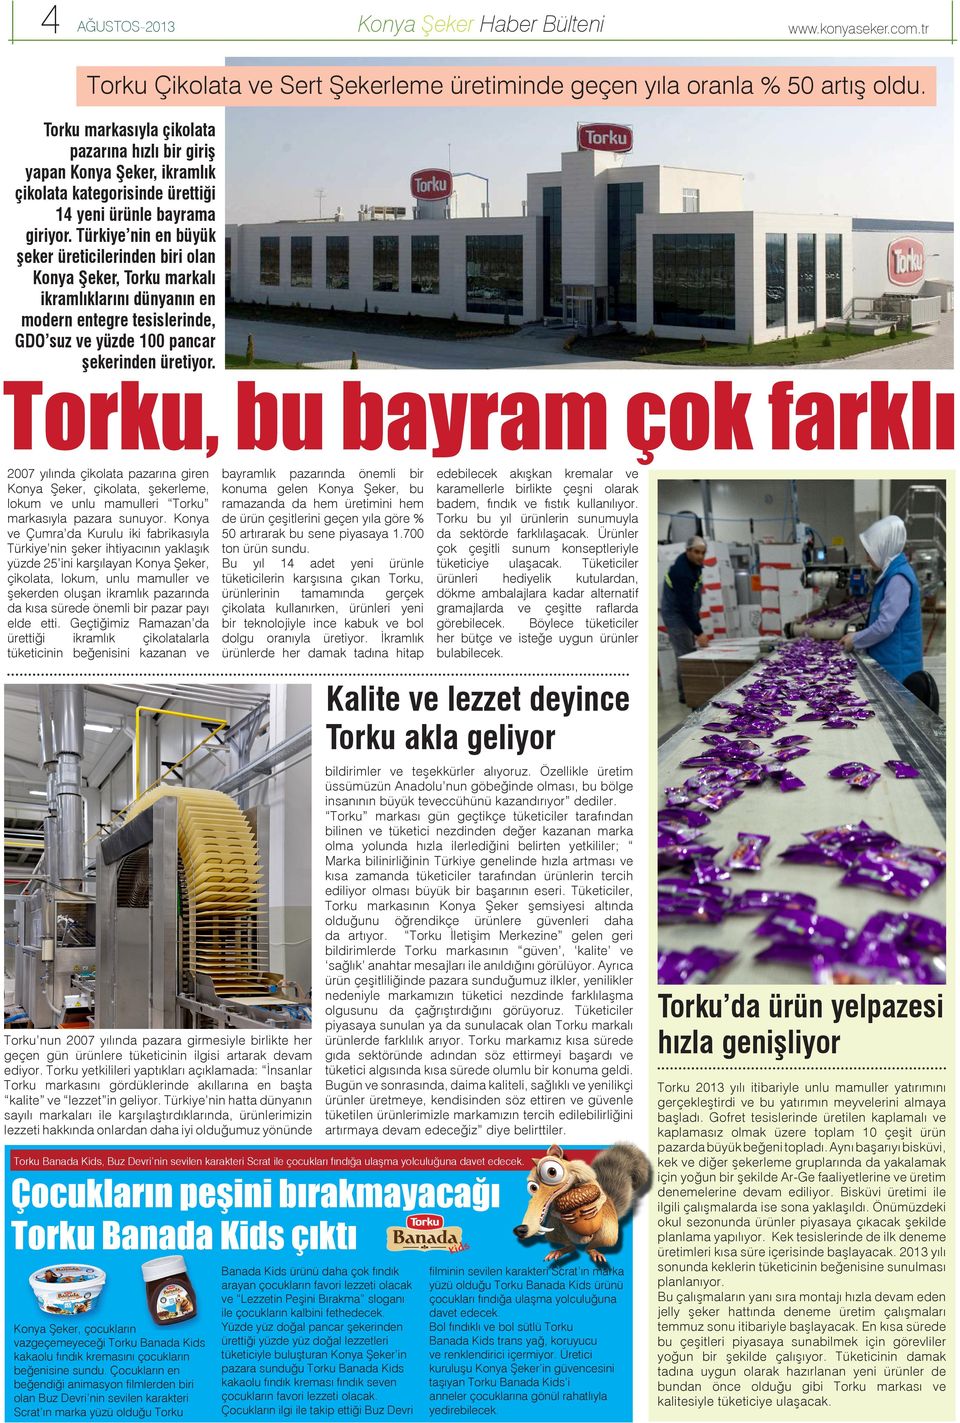 Türkiye nin en büyük şeker üreticilerinden biri olan Konya Şeker, Torku markalı ikramlıklarını dünyanın en modern entegre tesislerinde, GDO suz ve yüzde 100 pancar şekerinden üretiyor.